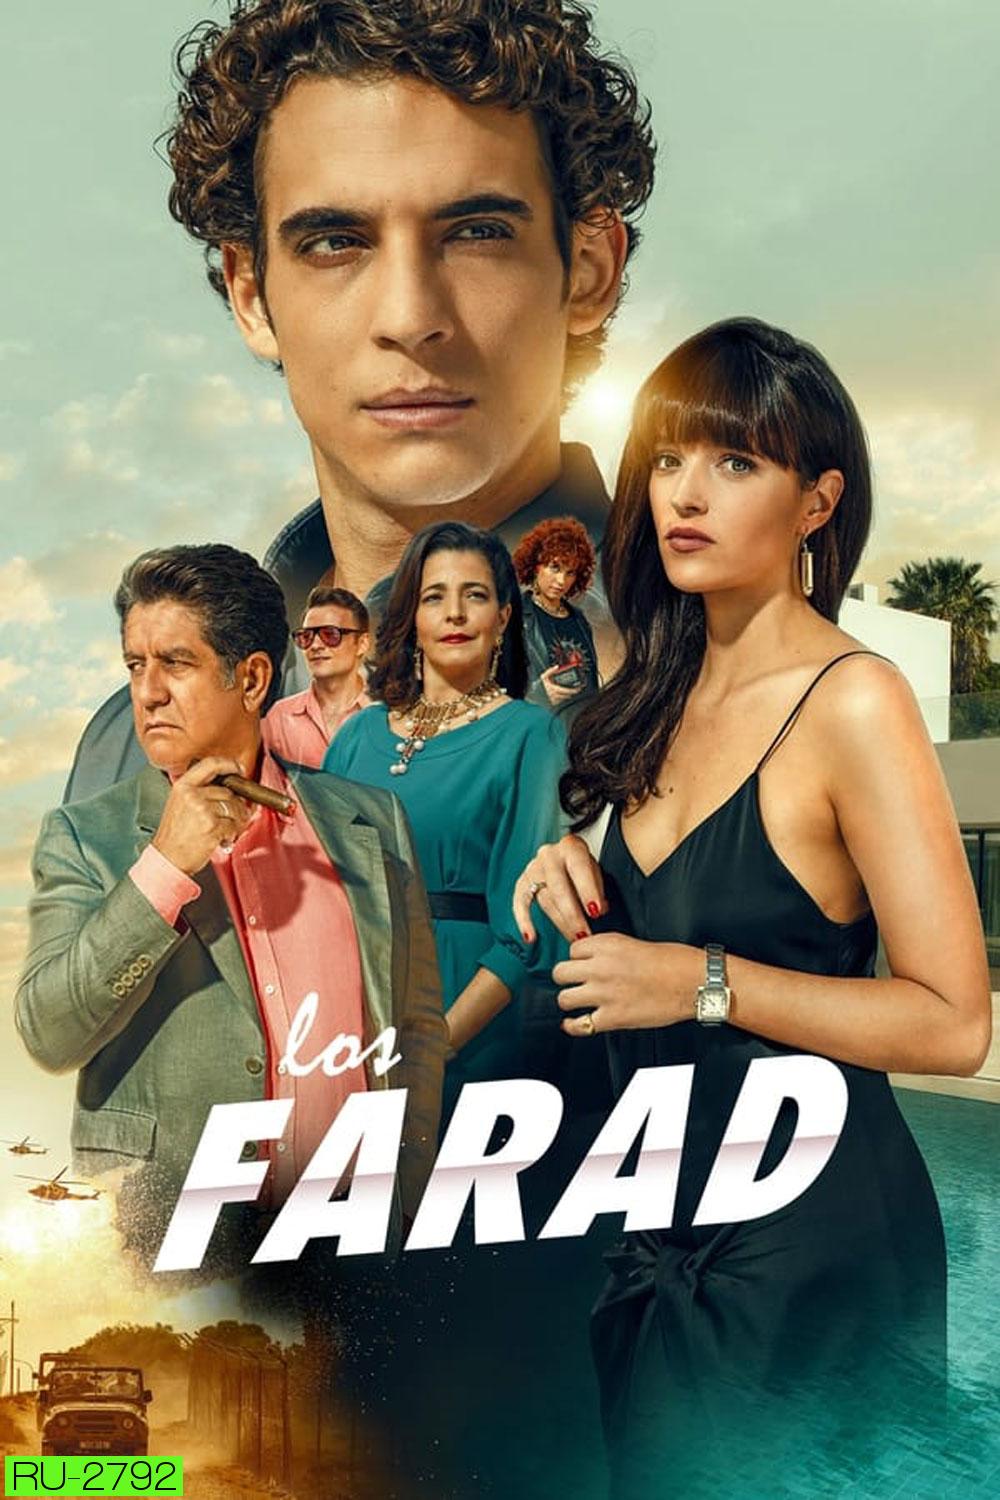 Los Farad (2023)